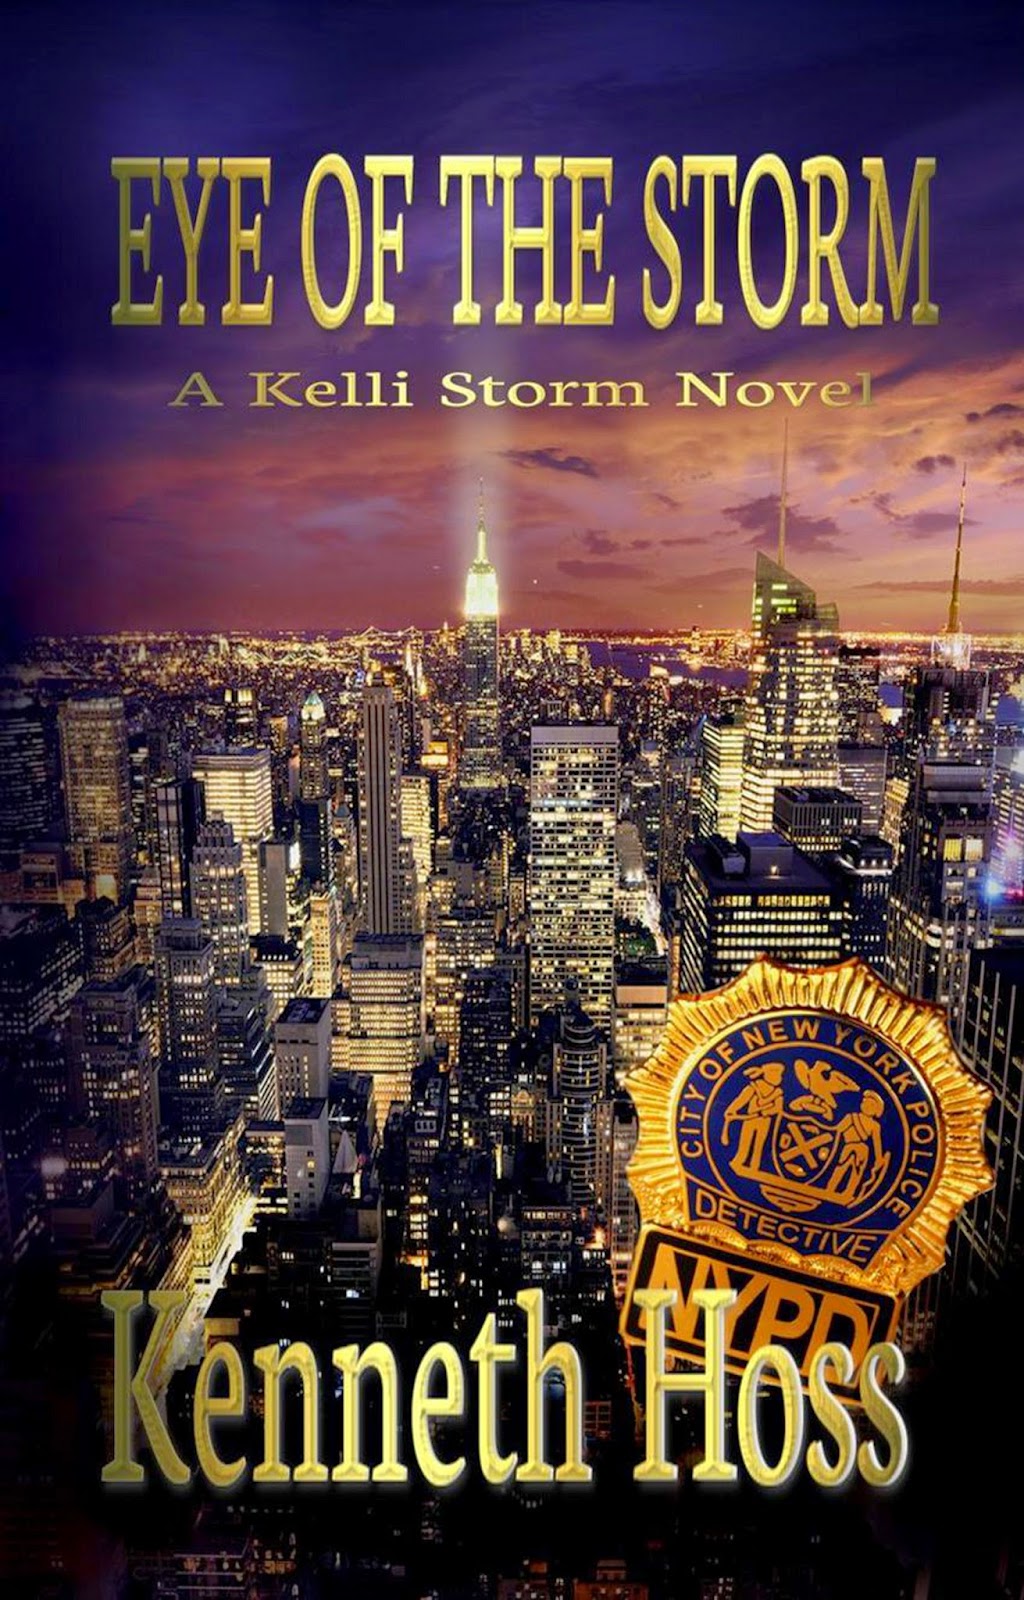 http://www.amazon.com/Eye-Storm-Kelli-Novel-Book-ebook/dp/B00MRBB5P4/ref=sr_1_1_title_0_main?s=books&ie=UTF8&qid=1408203198&sr=1-1&keywords=eye+of+the+storm+a+kelli+storm+novel